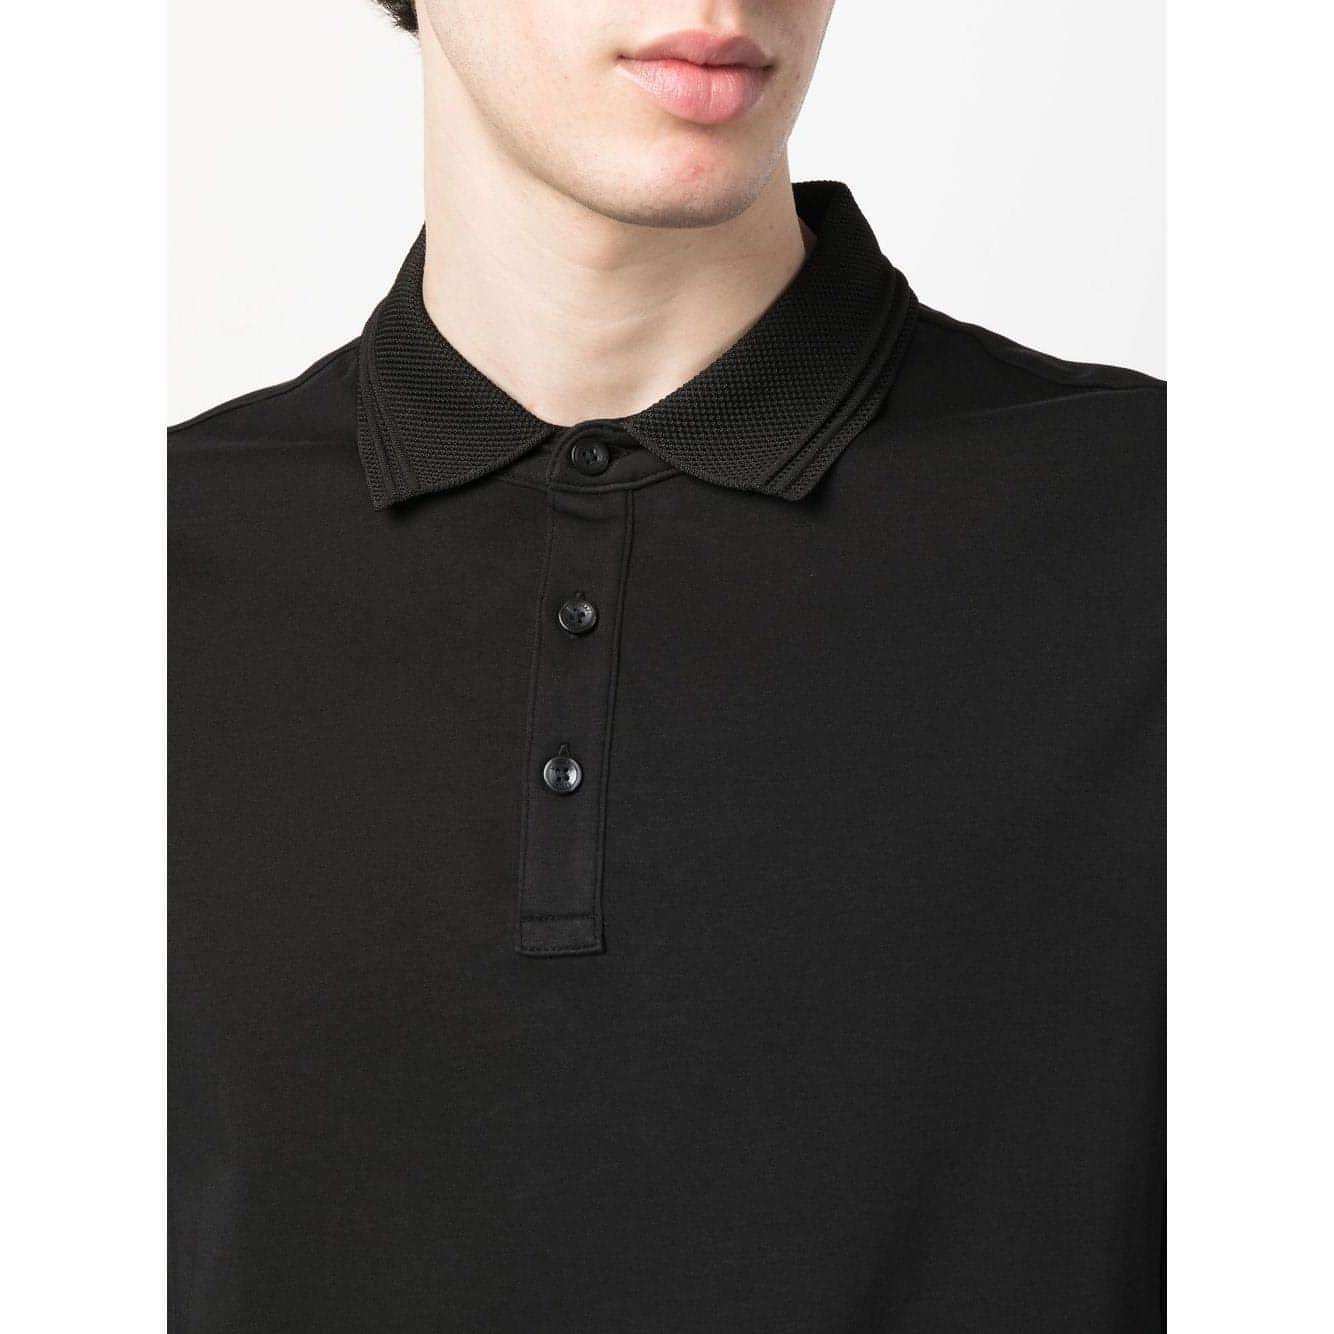 MICHAEL KORS vyriški juodi marškinėliai Long sleeve interlock polo